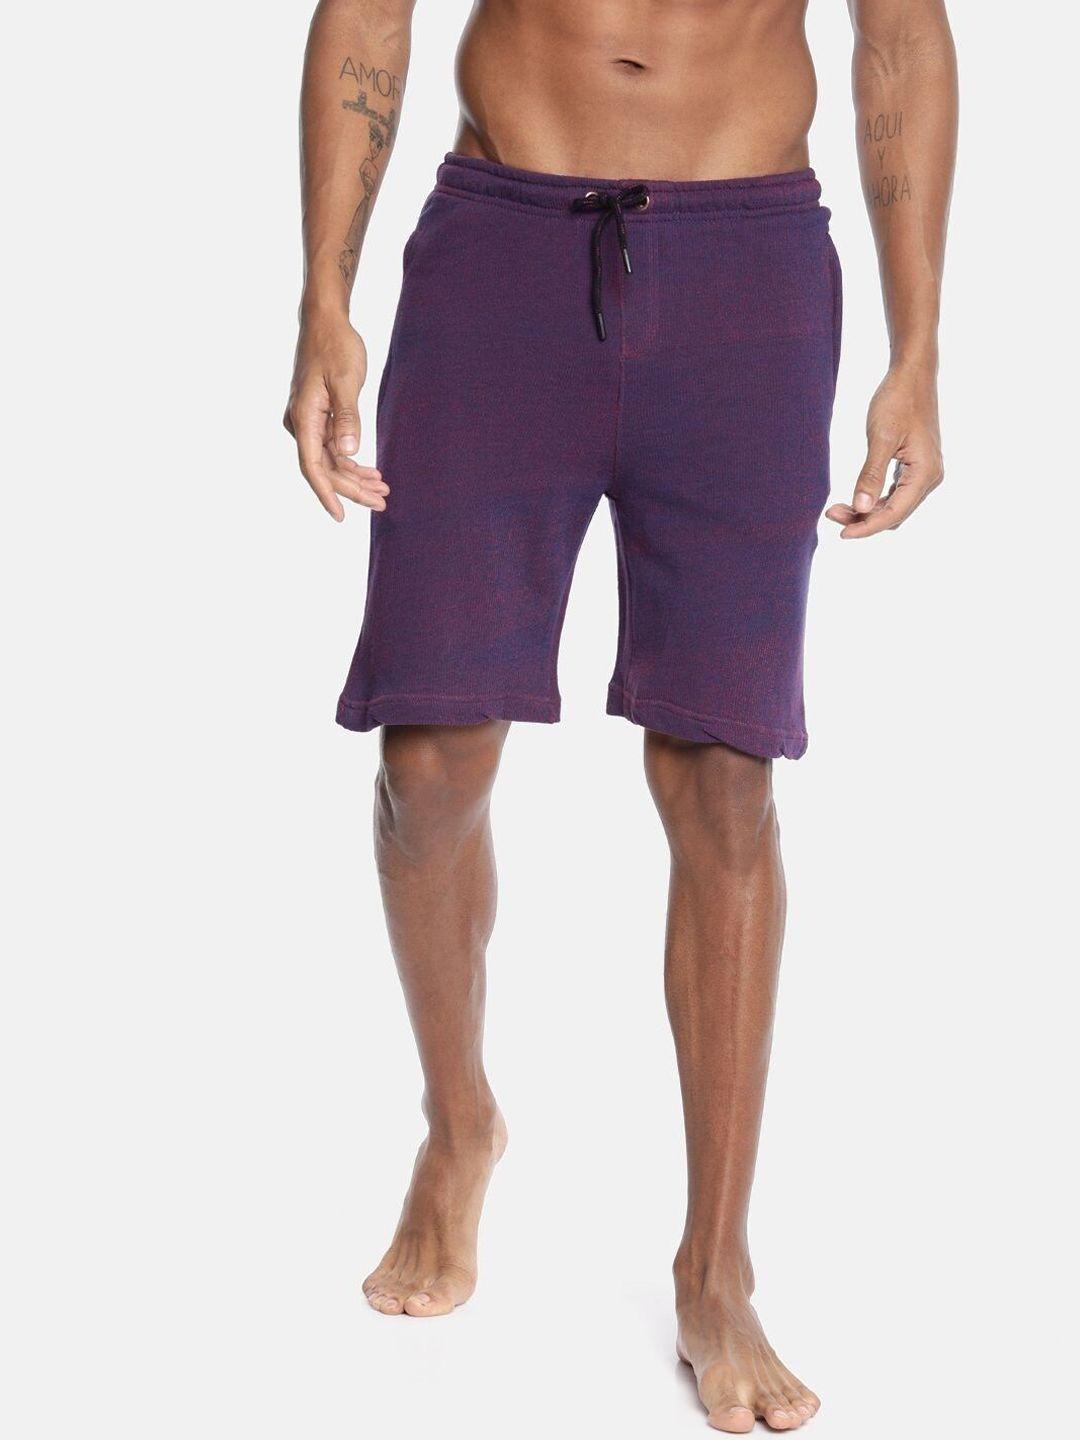 bareblow men outdoor cotton shorts